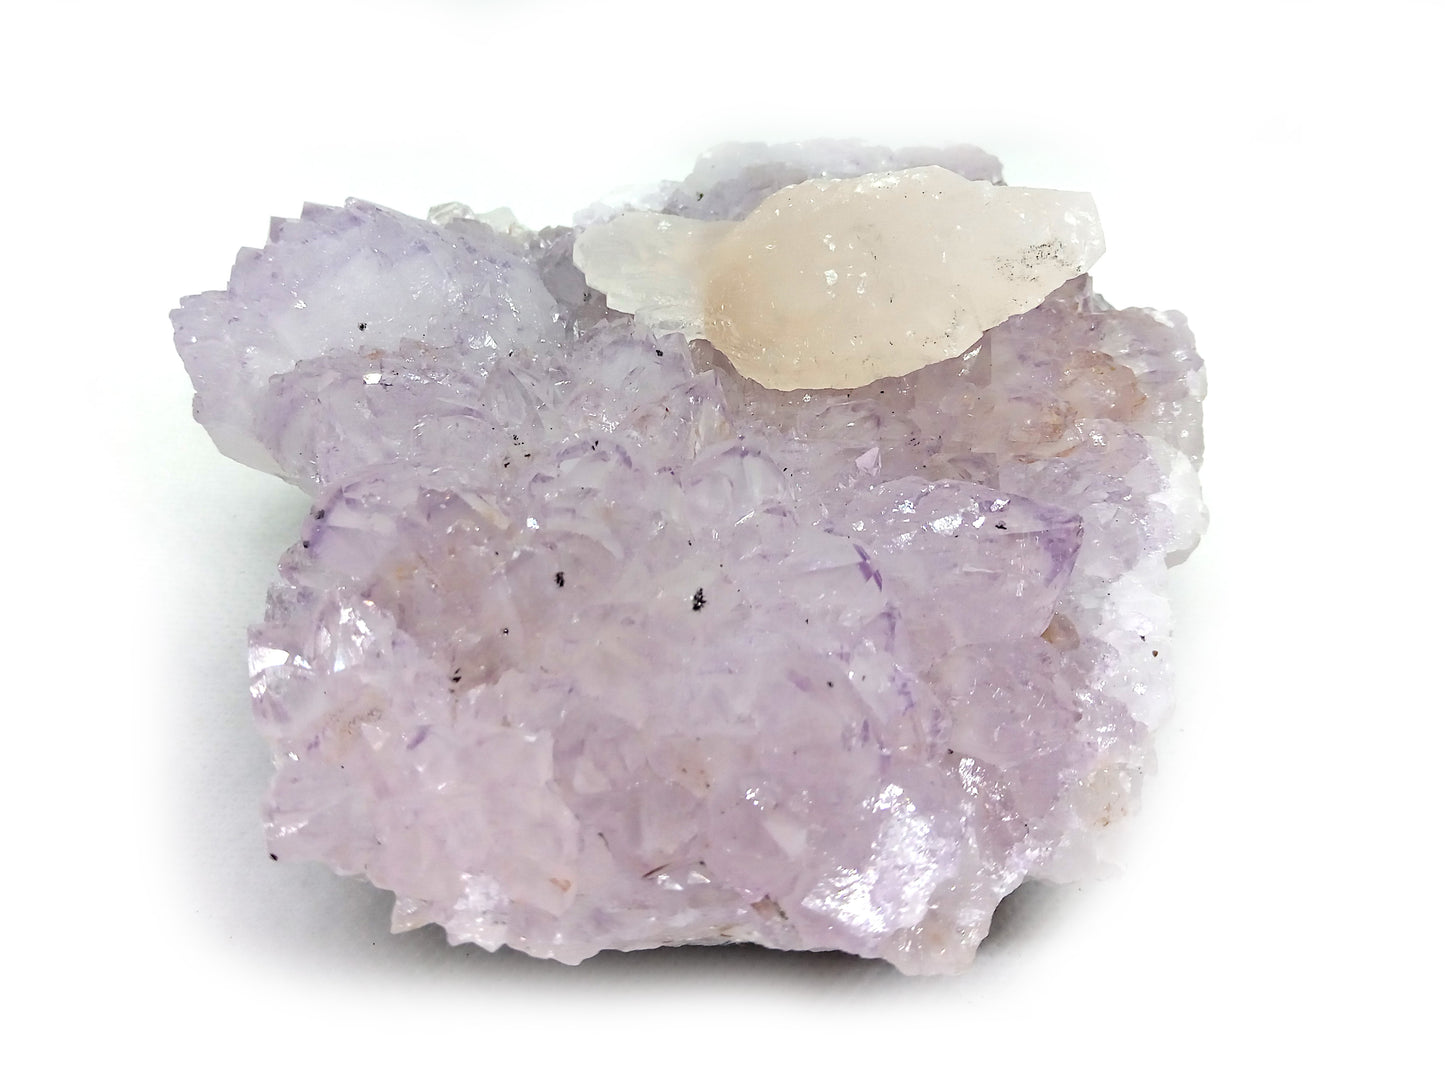 Rose quartz-amethyst with calcite